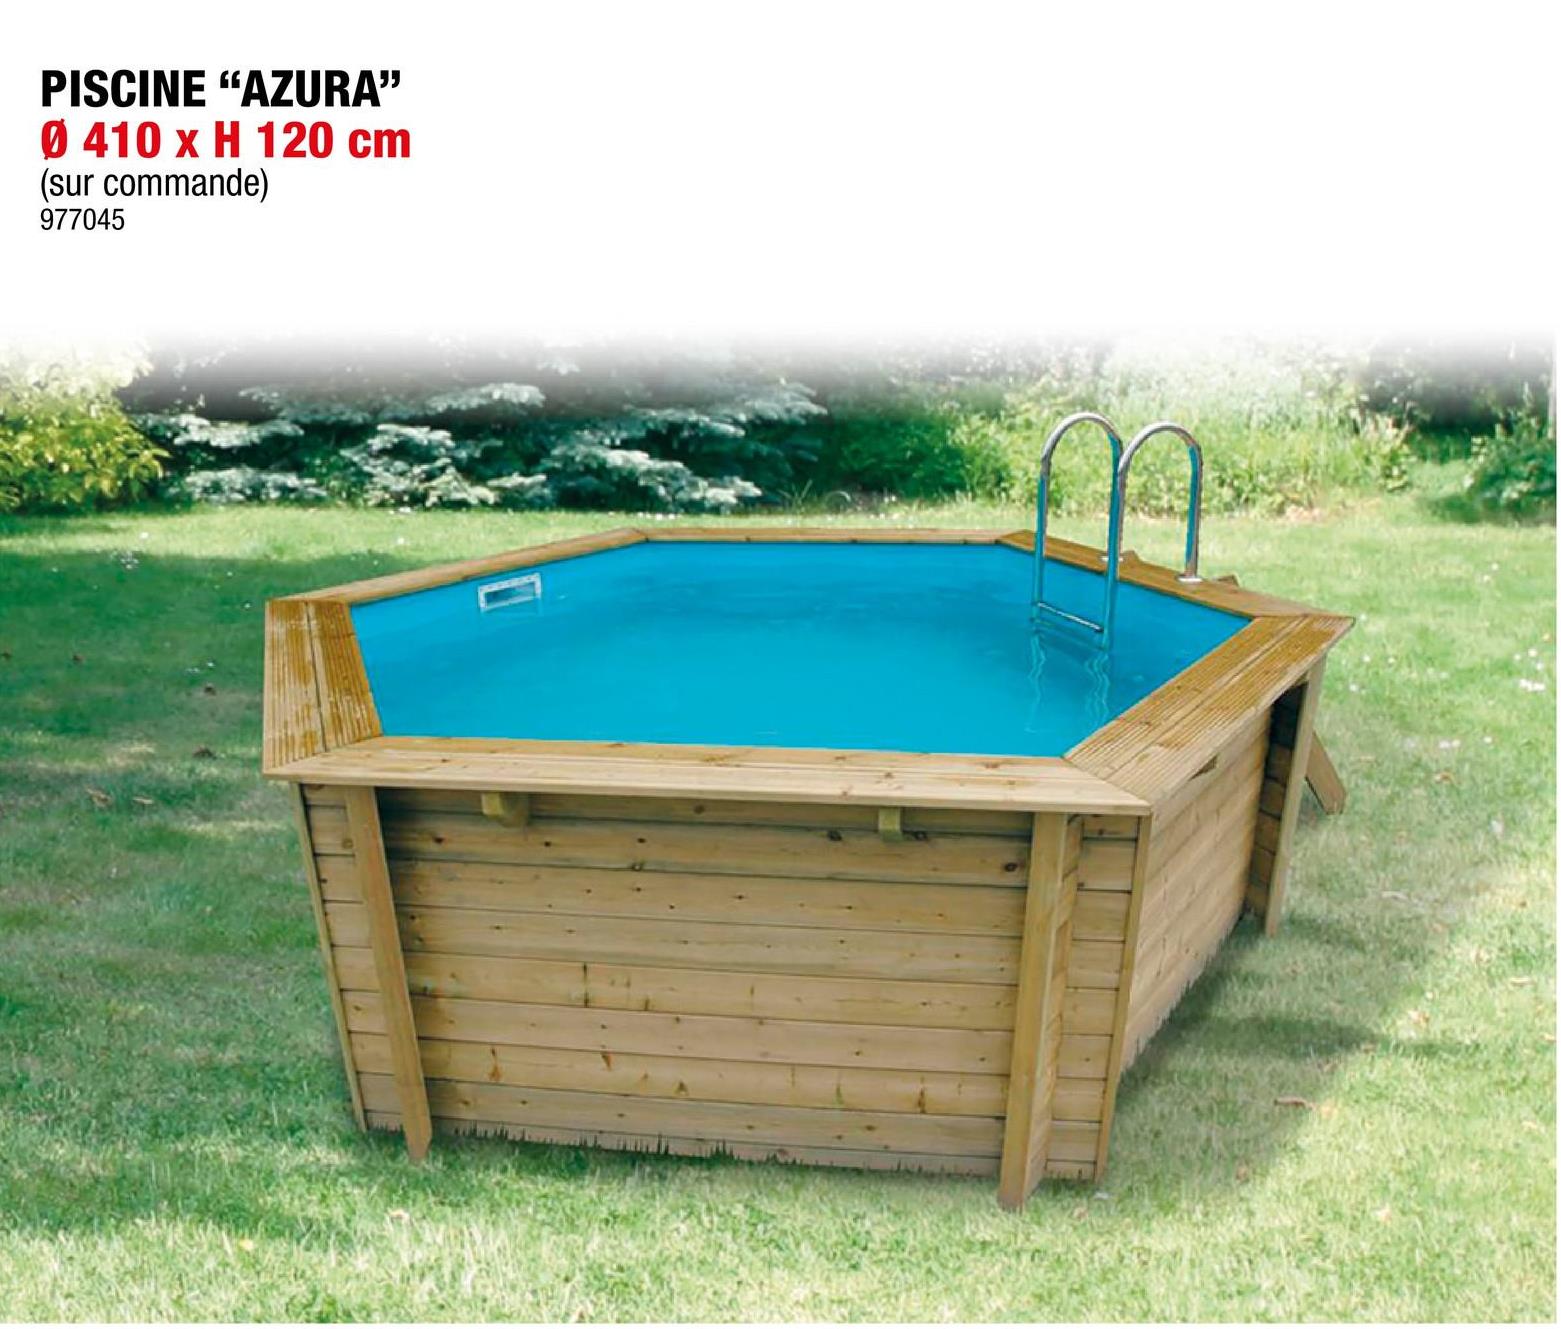 Ubbink Azura piscine 410x120 cm <p>La piscine hexagonale Azura en bois de Ubbink offre du plaisir aux petits et aux grands et trouve sa place sur n'importe quelle surface. Grâce à  sa faible hauteur de 120cm, même les plus jeunes enfants pourront en profiter. Grâce à  l'échelle en bois amovible, vous pouvez entrer dans la piscine en toute sécurité et la ranger facilement par la suite.</p>

<p>Grâce au traitement autoclave, votre piscine est protégée des moisissures et des insectes destructeurs de bois. Un fond en feutre antibactérien est également inclus dans la piscine, de sorte qu'elle répond entièrement aux exigences de sécurité prescrites. Vous pouvez installer la piscine soit hors sol, soit partiellement ou totalement enterrée.</p>

<p>Que vous choisissiez une piscine hors sol ou une piscine partiellement ou totalement enterrée, la piscine doit toujours être posée sur une dalle en béton, en raison de la stabilité requise et pour pouvoir continuer à  bénéficier de la garantie.</p>

<p>Inclus :</p>

<ul>
	<li>Échelle en bois amovible à  3 marches</li>
	<li>Échelle de piscine en acier inoxydable à  3 marches</li>
	<li>Fond en feutre antibactérien 200 g/m²</li>
	<li>Liner 0,5mm</li>
	<li>Bâche à  bulles comprise</li>
	<li>Skimmer</li>
	<li>Filtre à  sable D 400 6 m³/h</li>
	<li>Pompe de piscine Poolmax TP35 230V</li>
</ul>